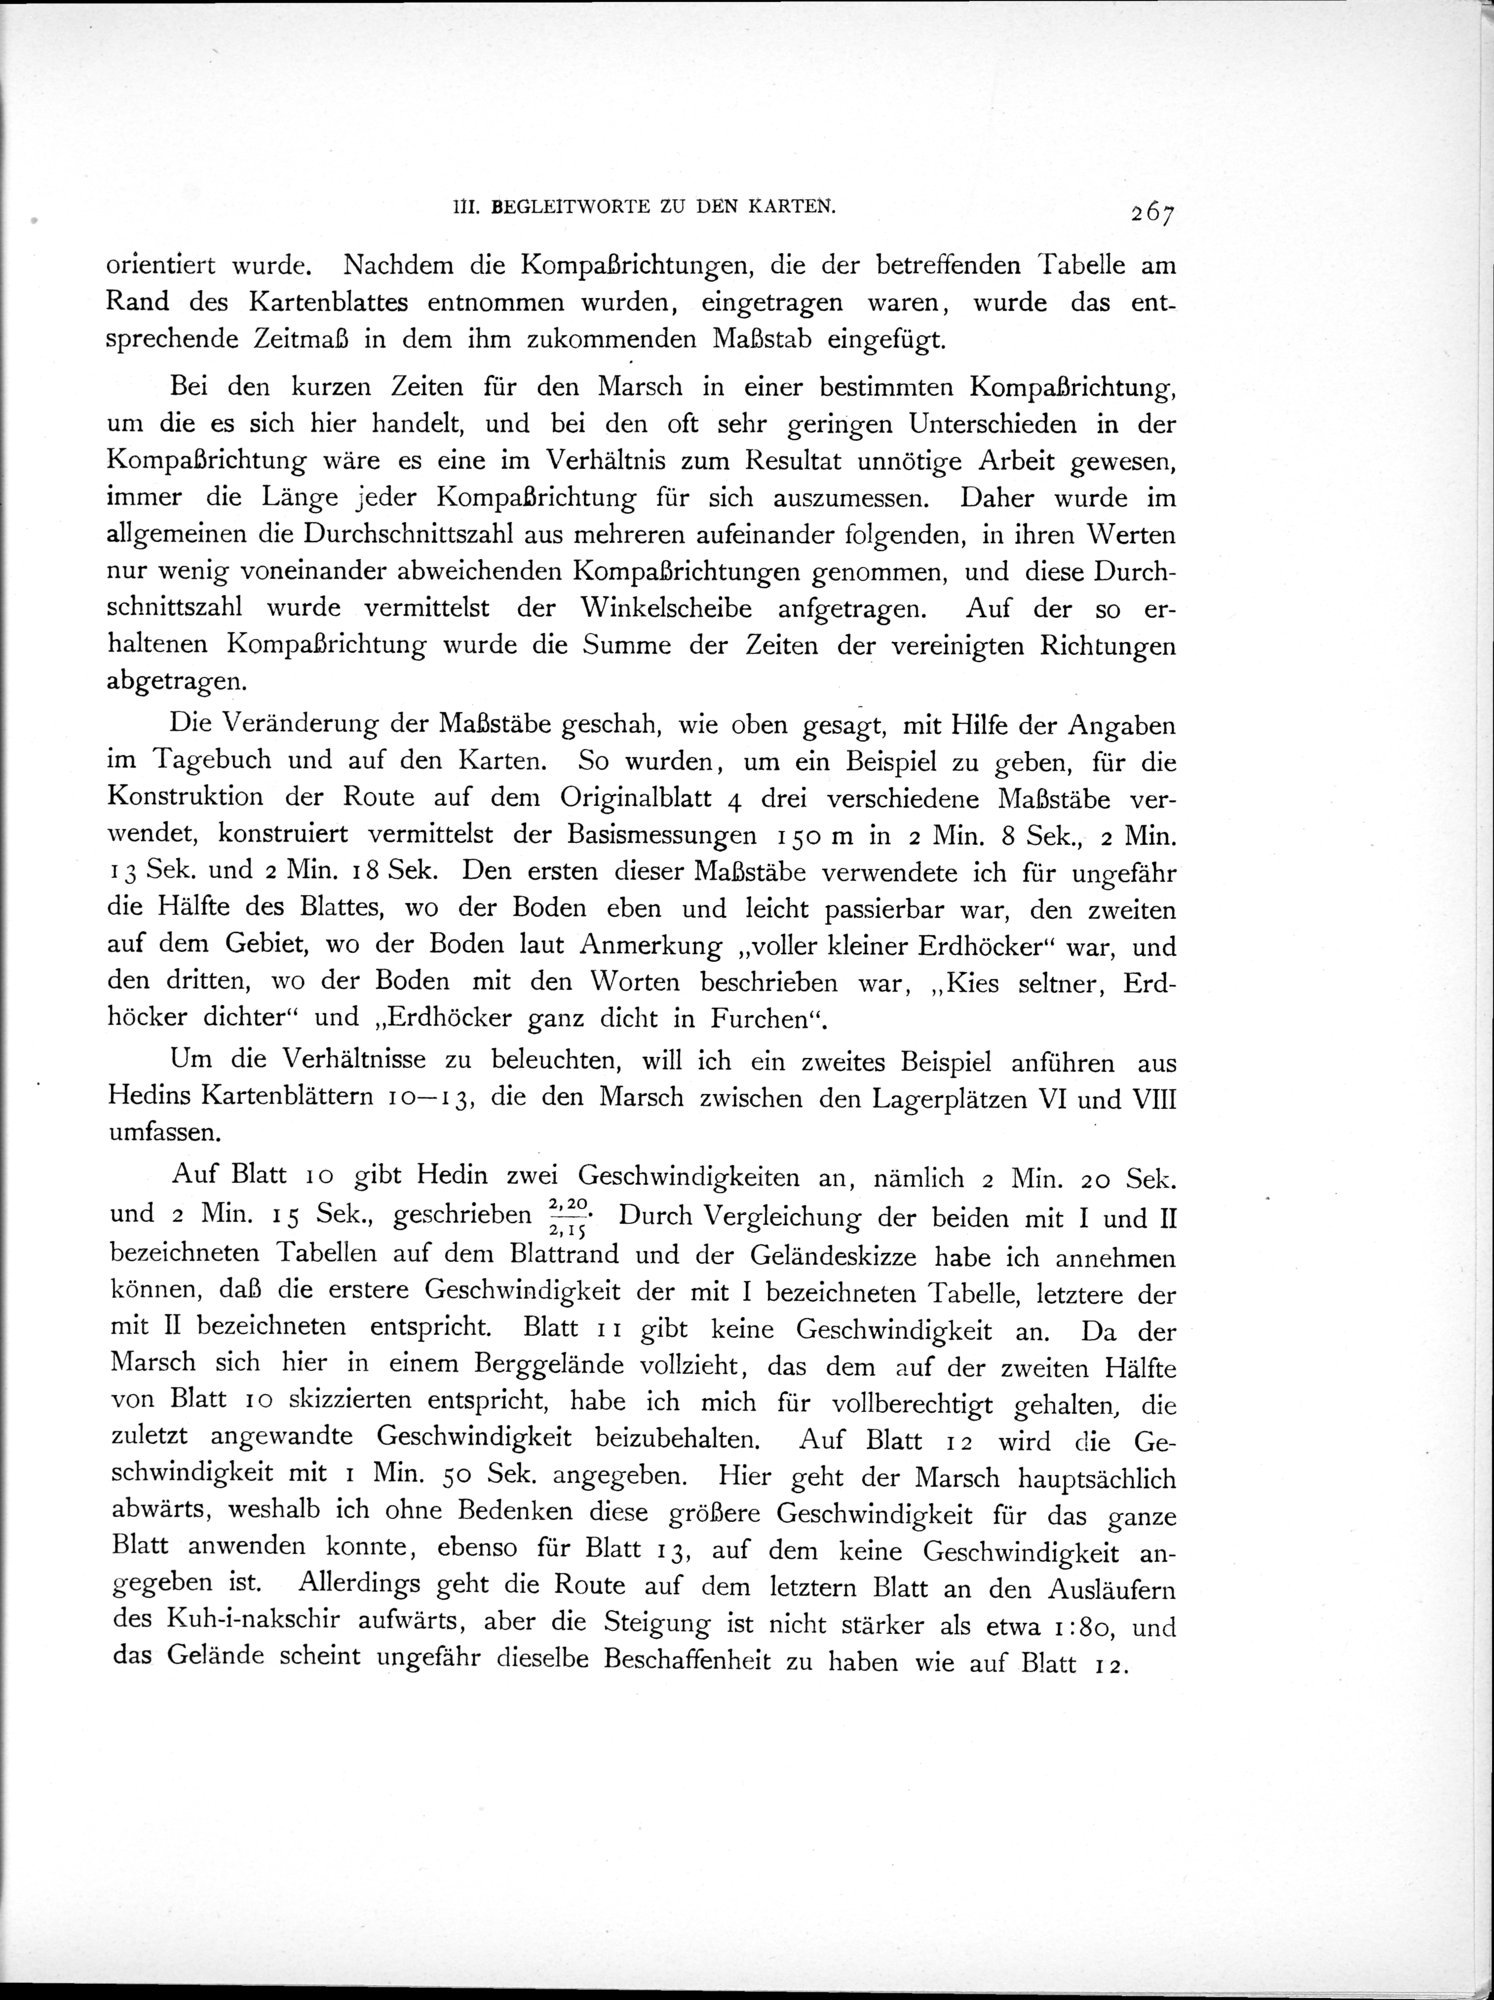 Eine Routenaufnahme durch Ostpersien : vol.2 / Page 337 (Grayscale High Resolution Image)